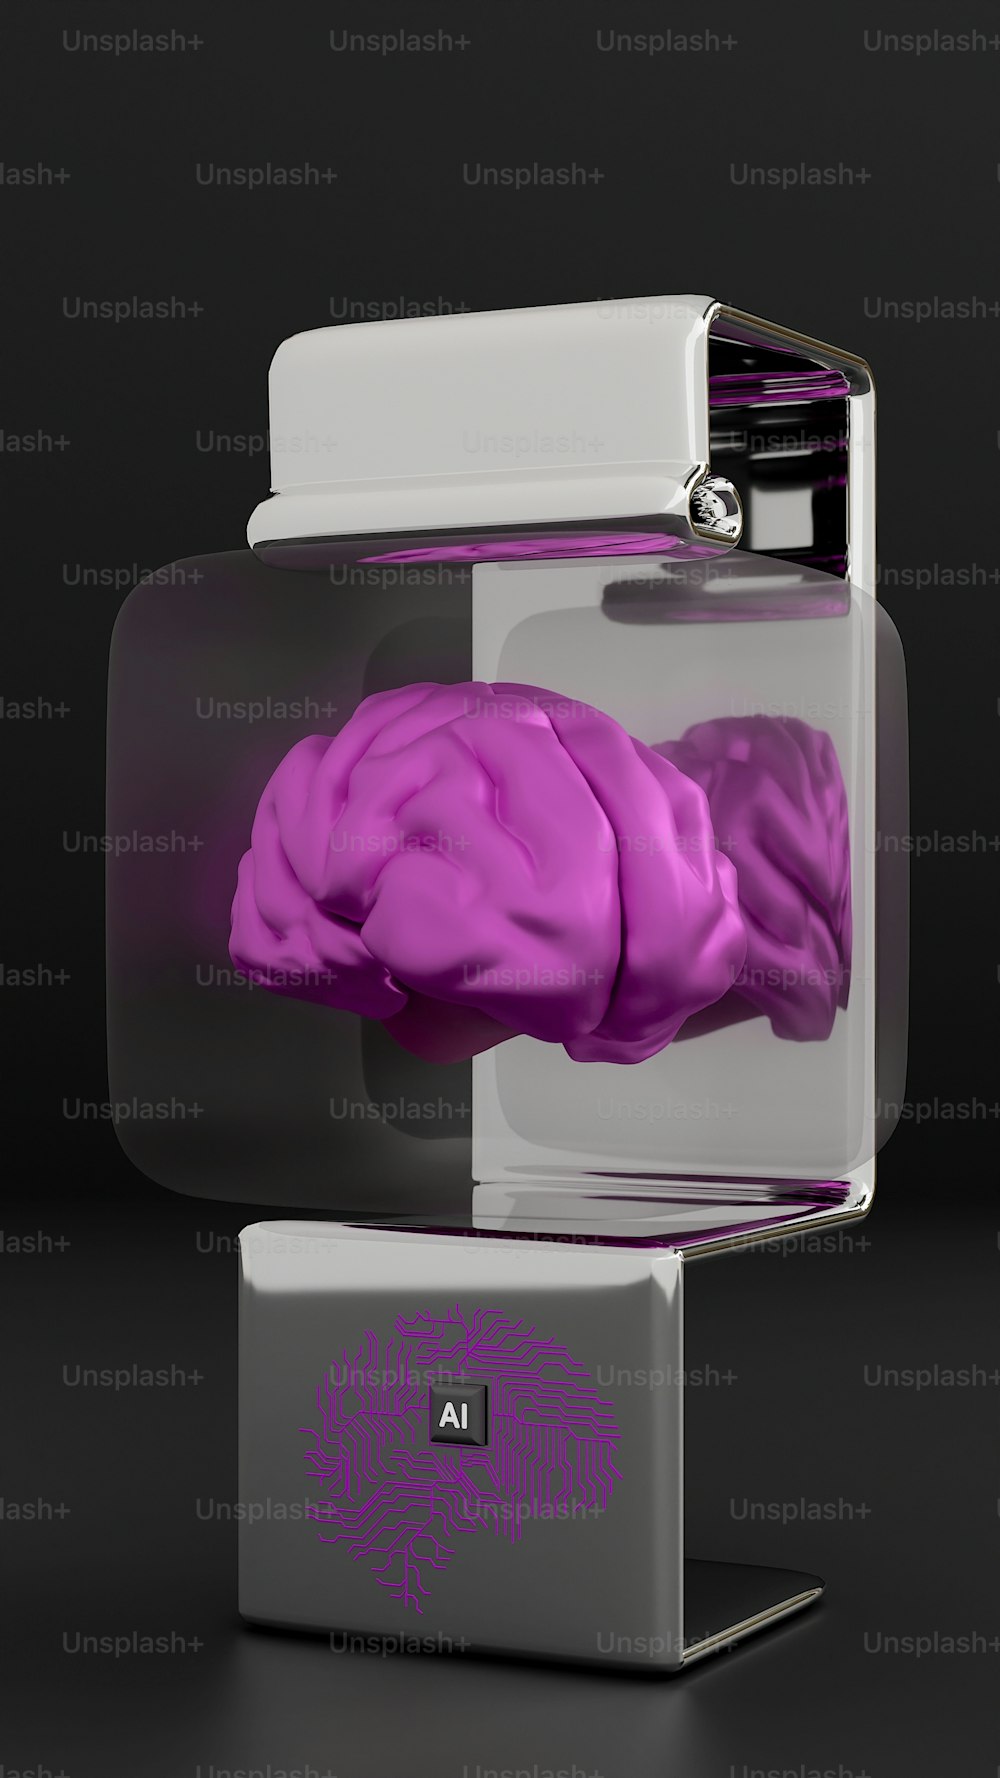 유��리 케이스에 담긴 인간 뇌의 보라색 모형